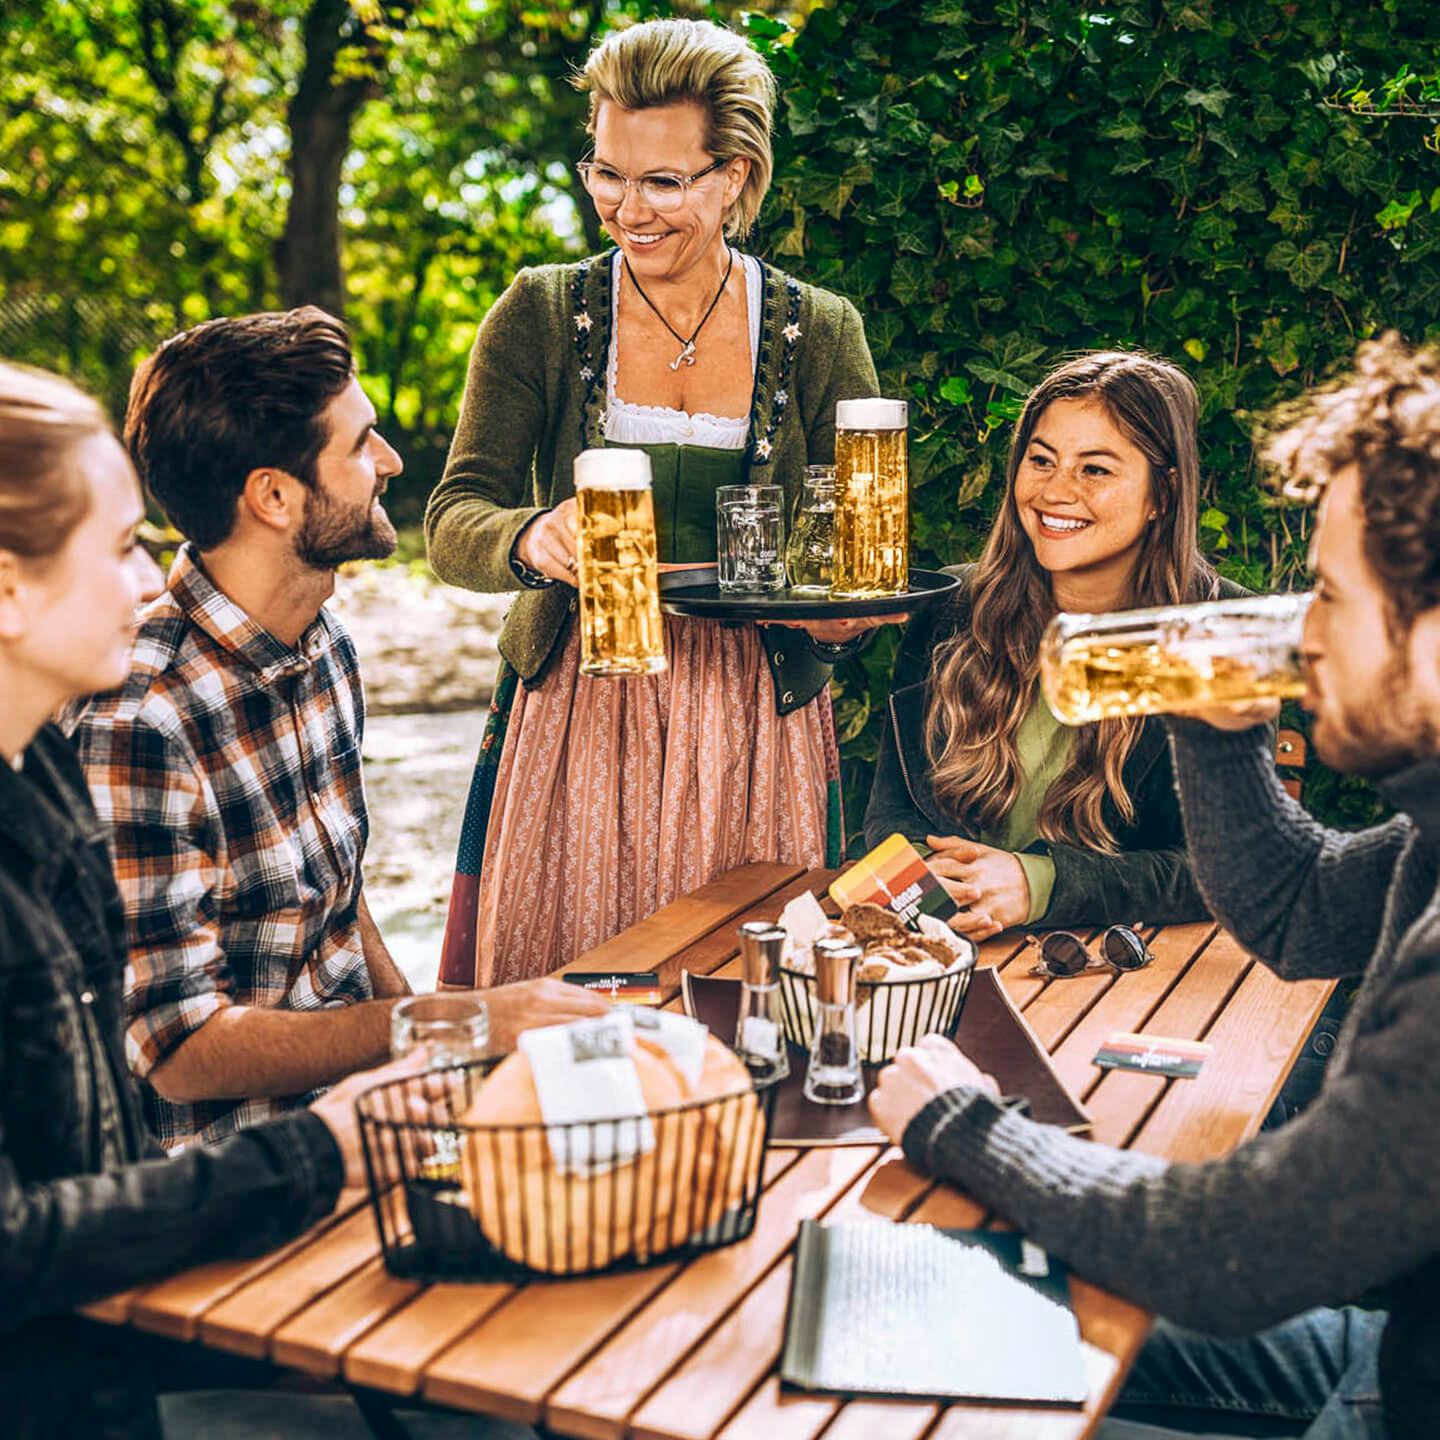 Foto: Gruppe im Gastgarten Bier trinken Unterhaltung